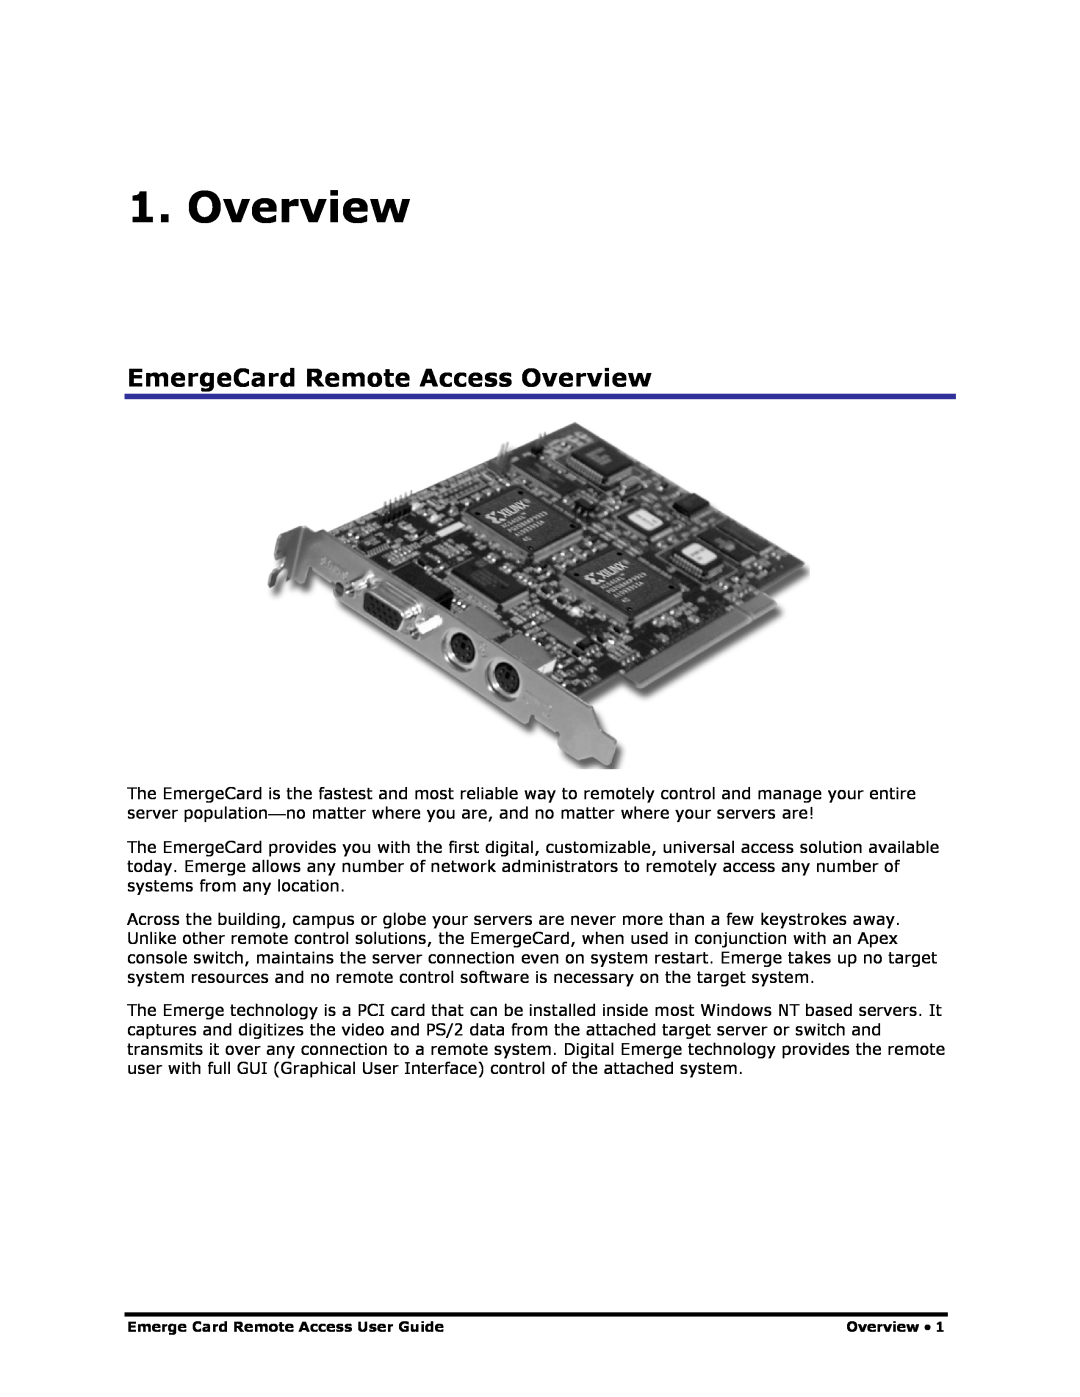 Apex Digital Apex EmergeCard Remote Access manual EmergeCard Remote Access Overview 